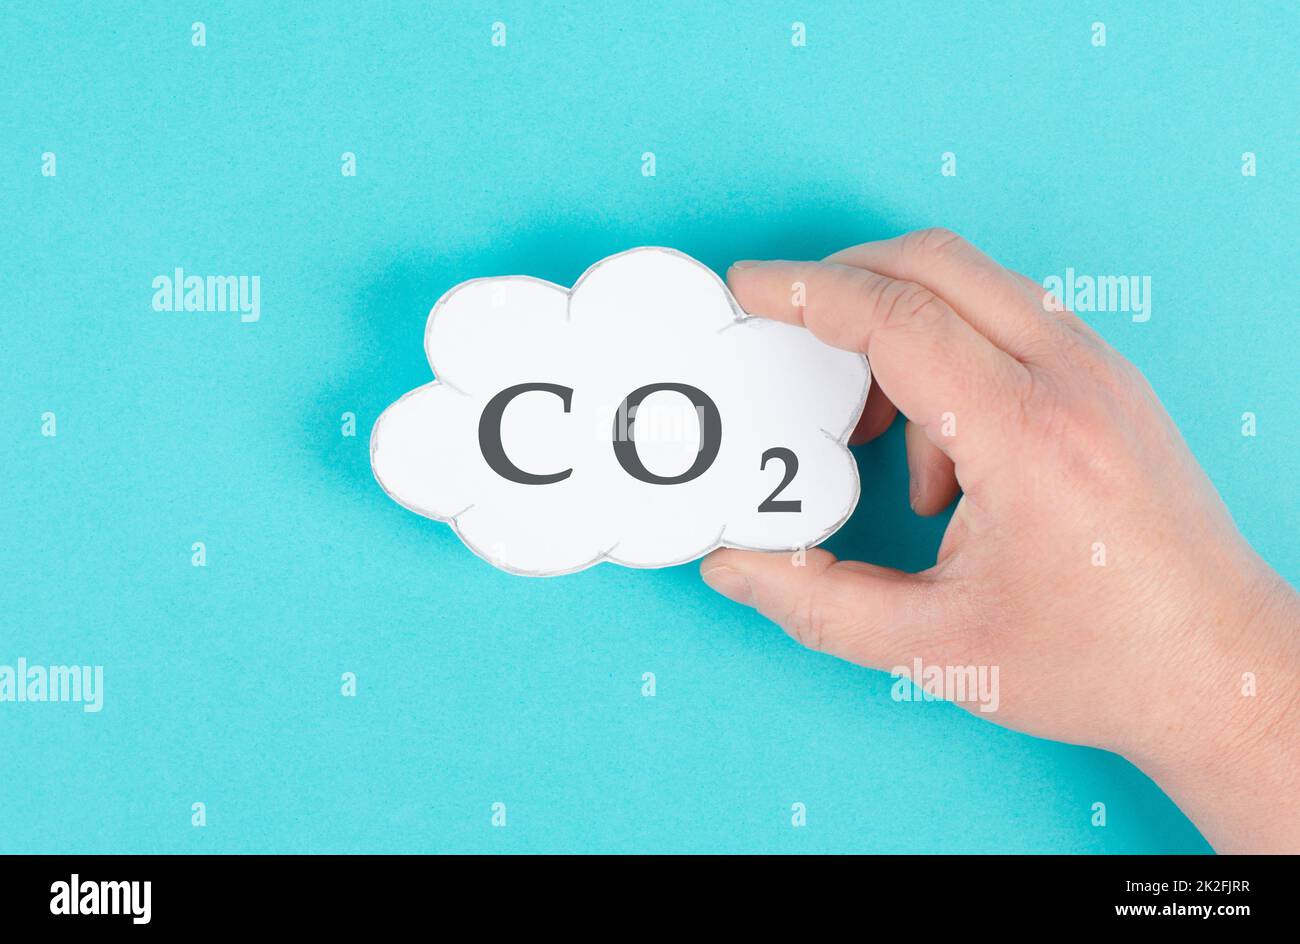 La mano nuvola con la parola CO 2, emissioni di anidride carbonica, problemi ambientali, inquinamento atmosferico Foto Stock